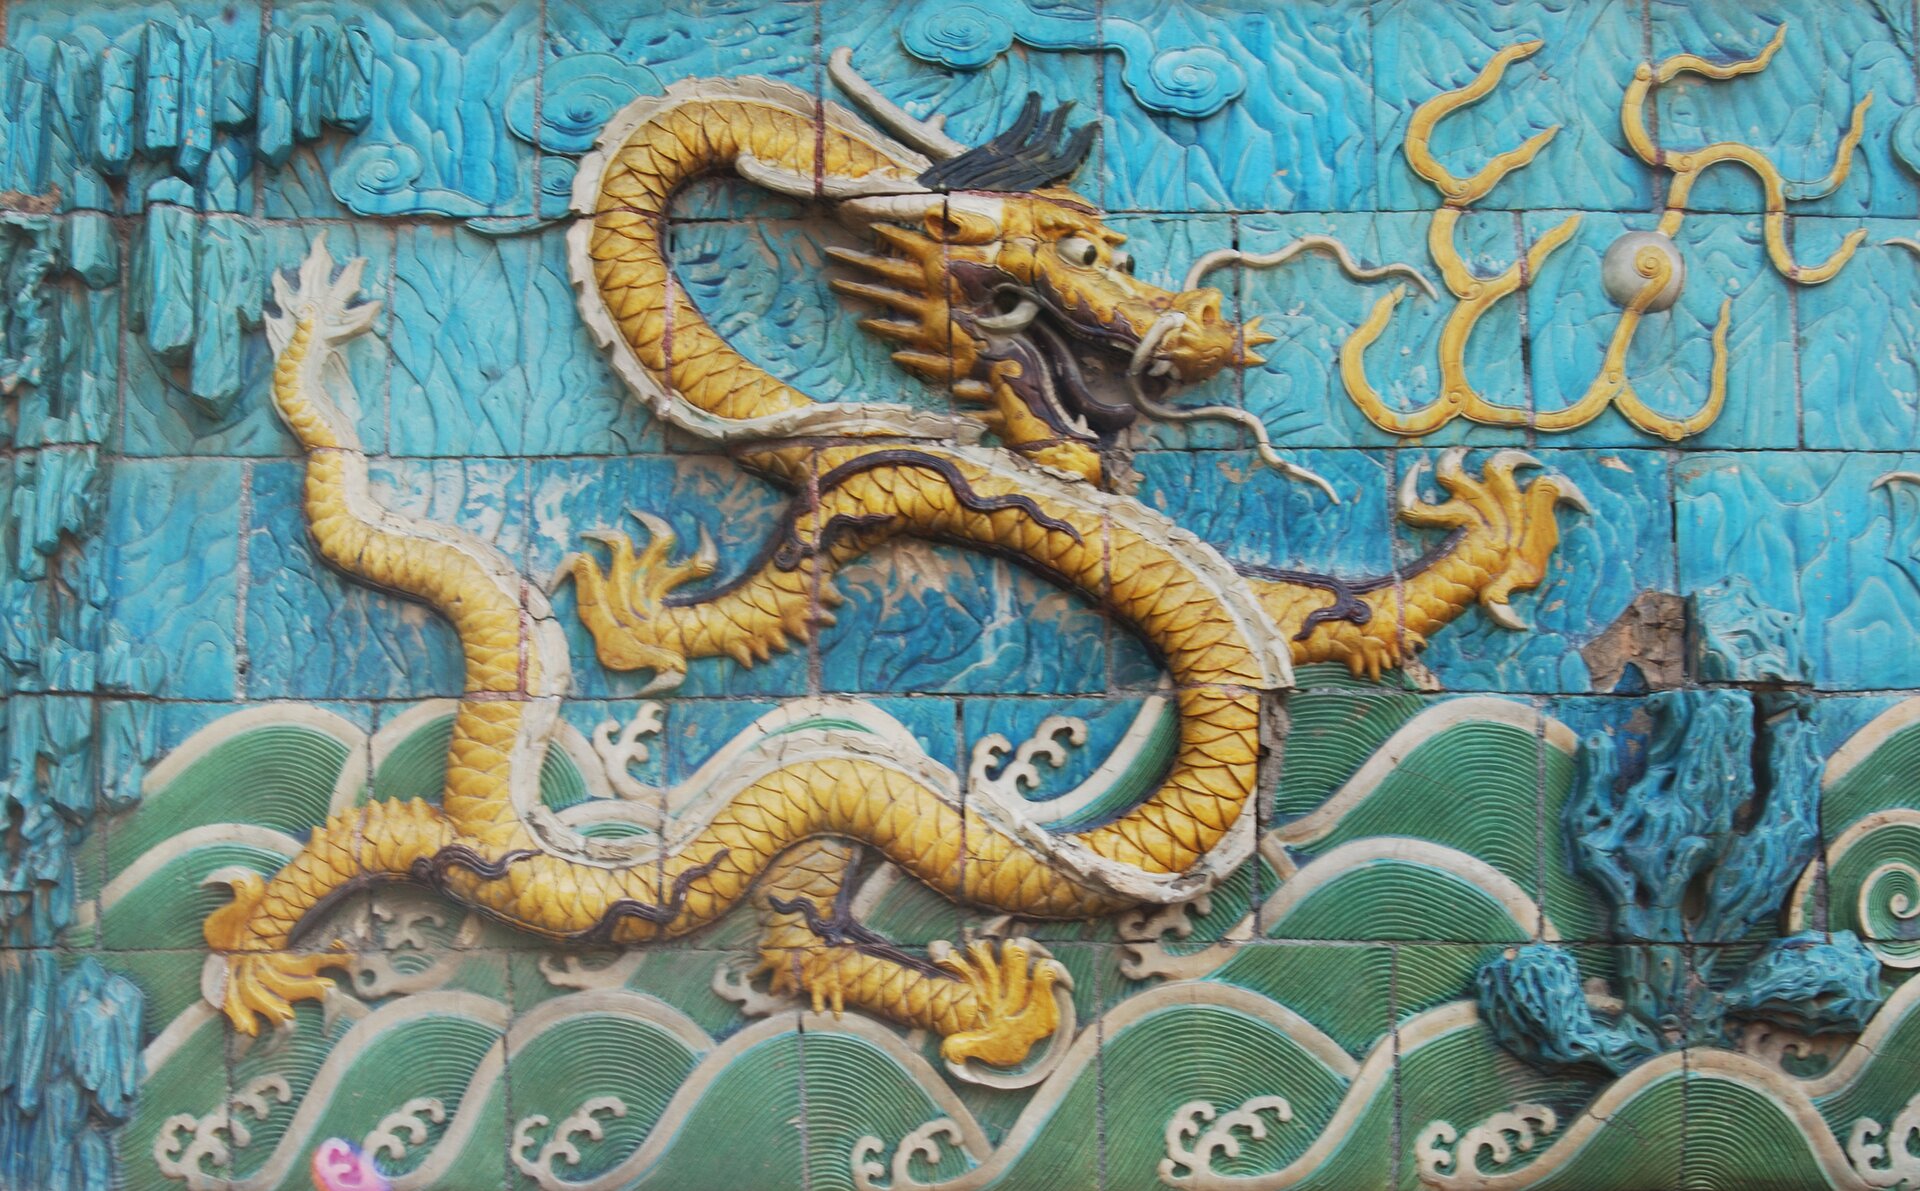 Ściana Dziewięciu Smoków w Zakazanym Mieście w Pekinie, Chiny Ściana Dziewięciu Smoków w Zakazanym Mieście w Pekinie, Chiny Źródło: Wing, licencja: CC BY-SA 3.0.